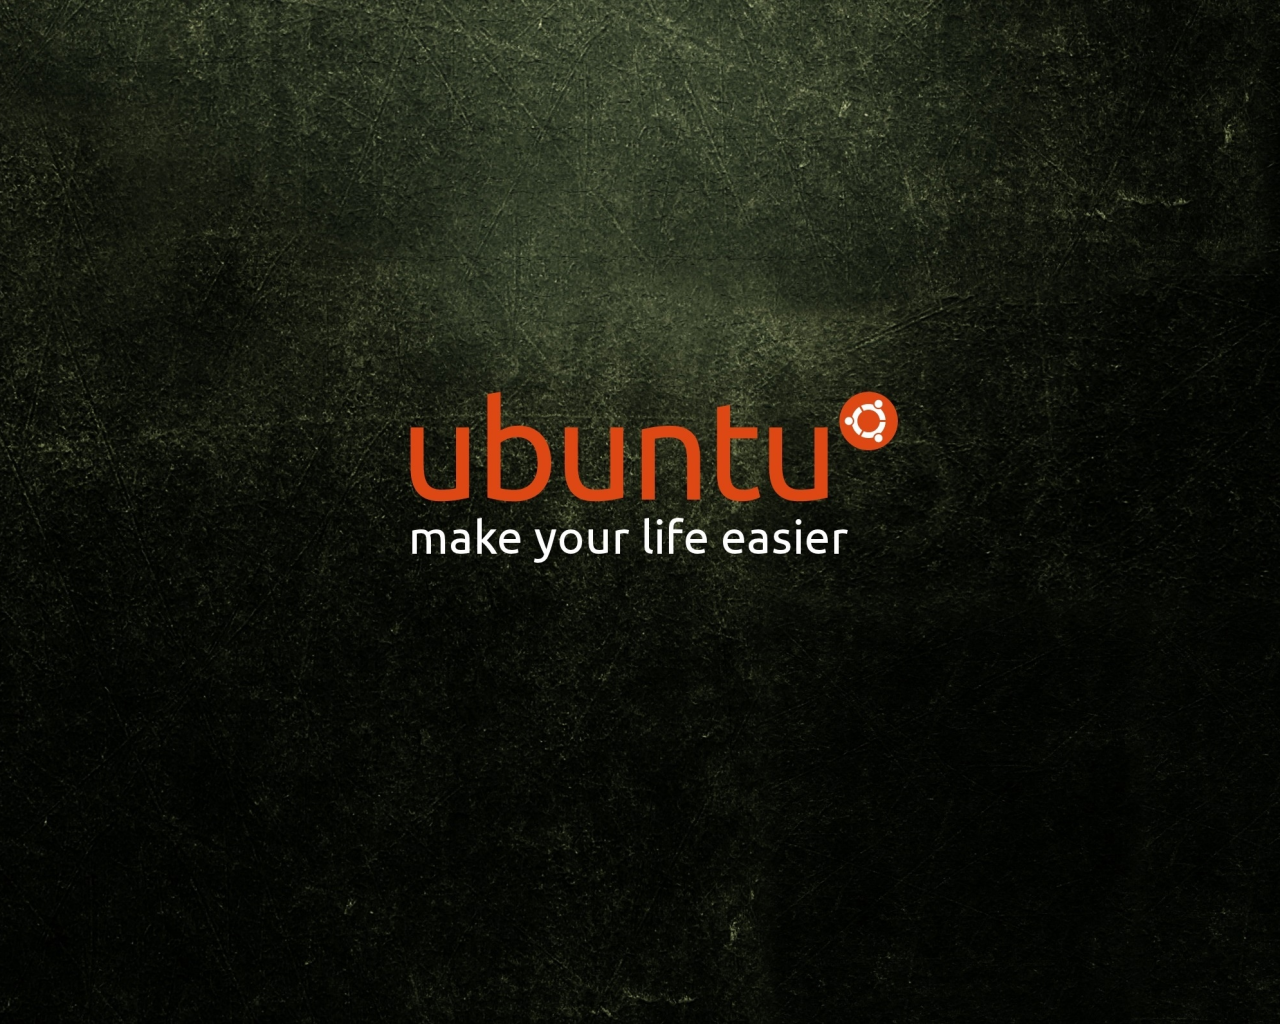 free, orange, white, ubuntu, life, software